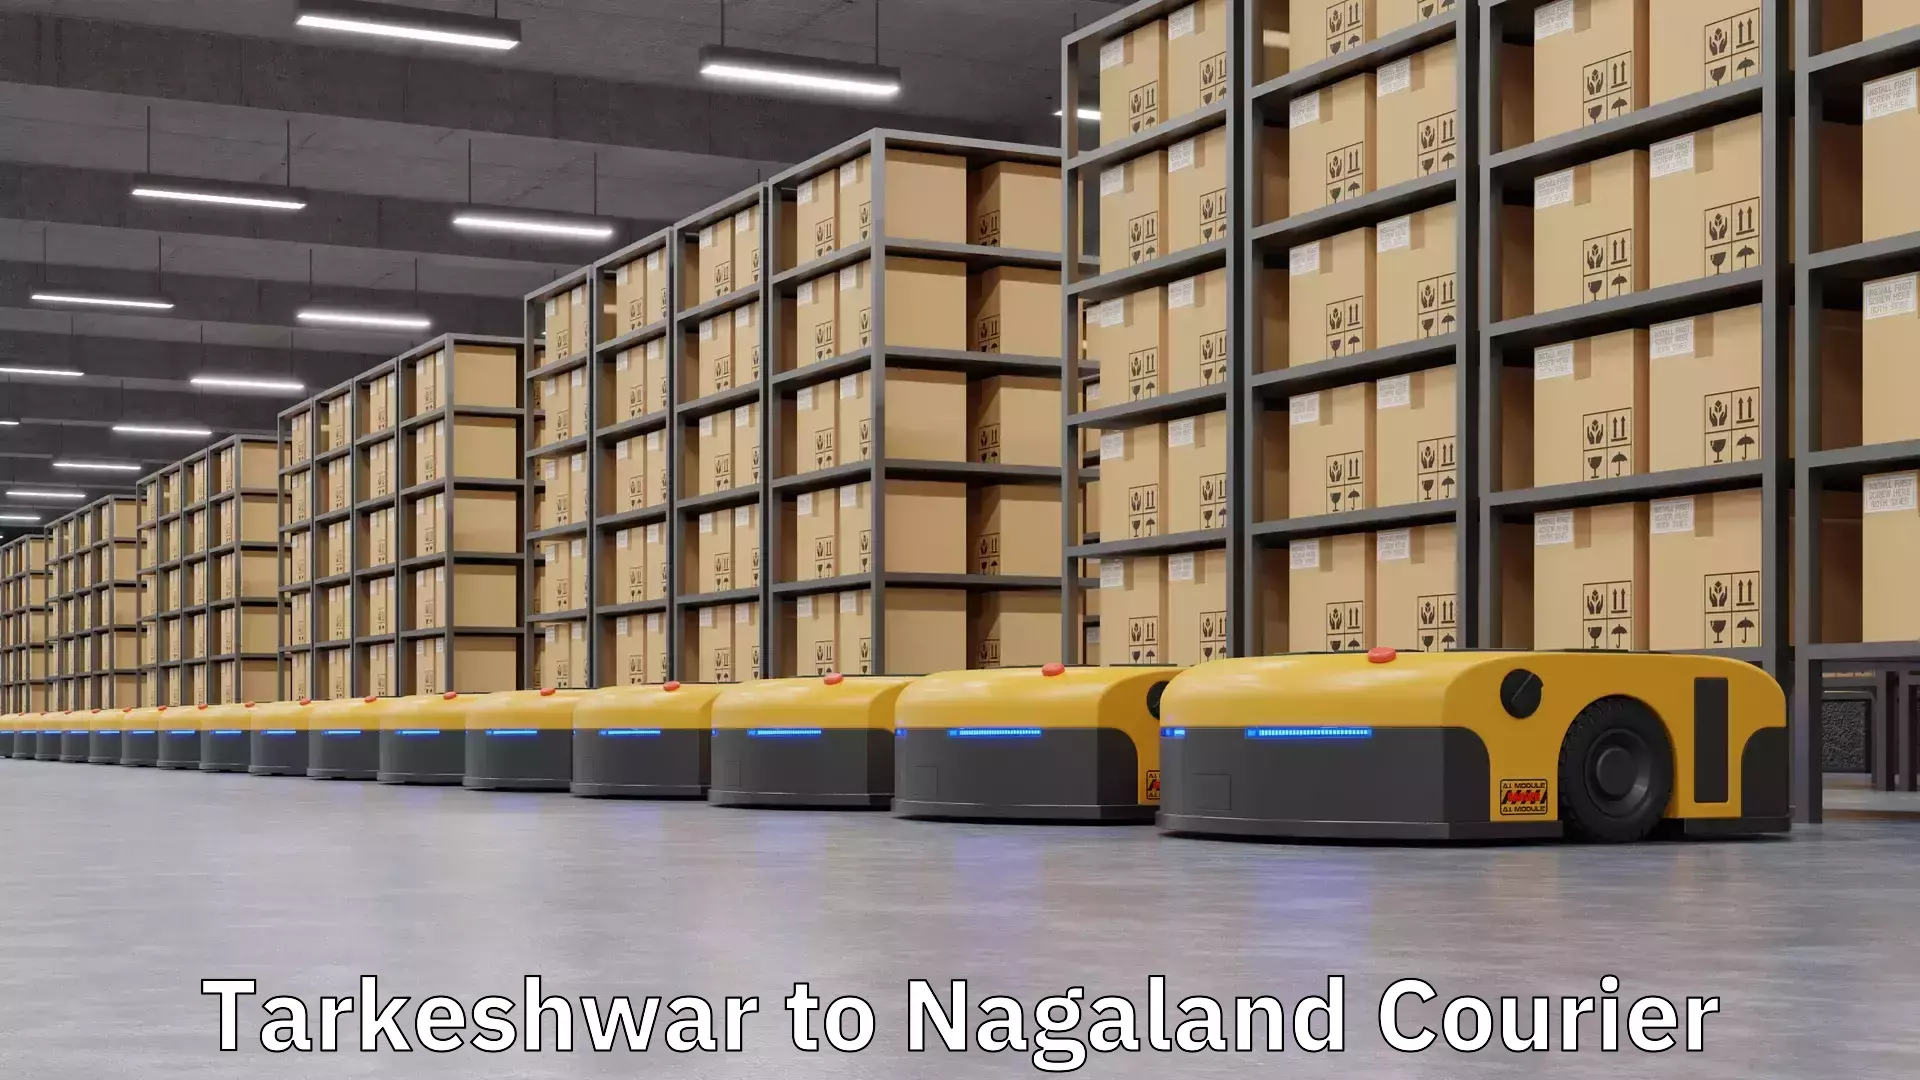 Cash on delivery service Tarkeshwar to Nagaland